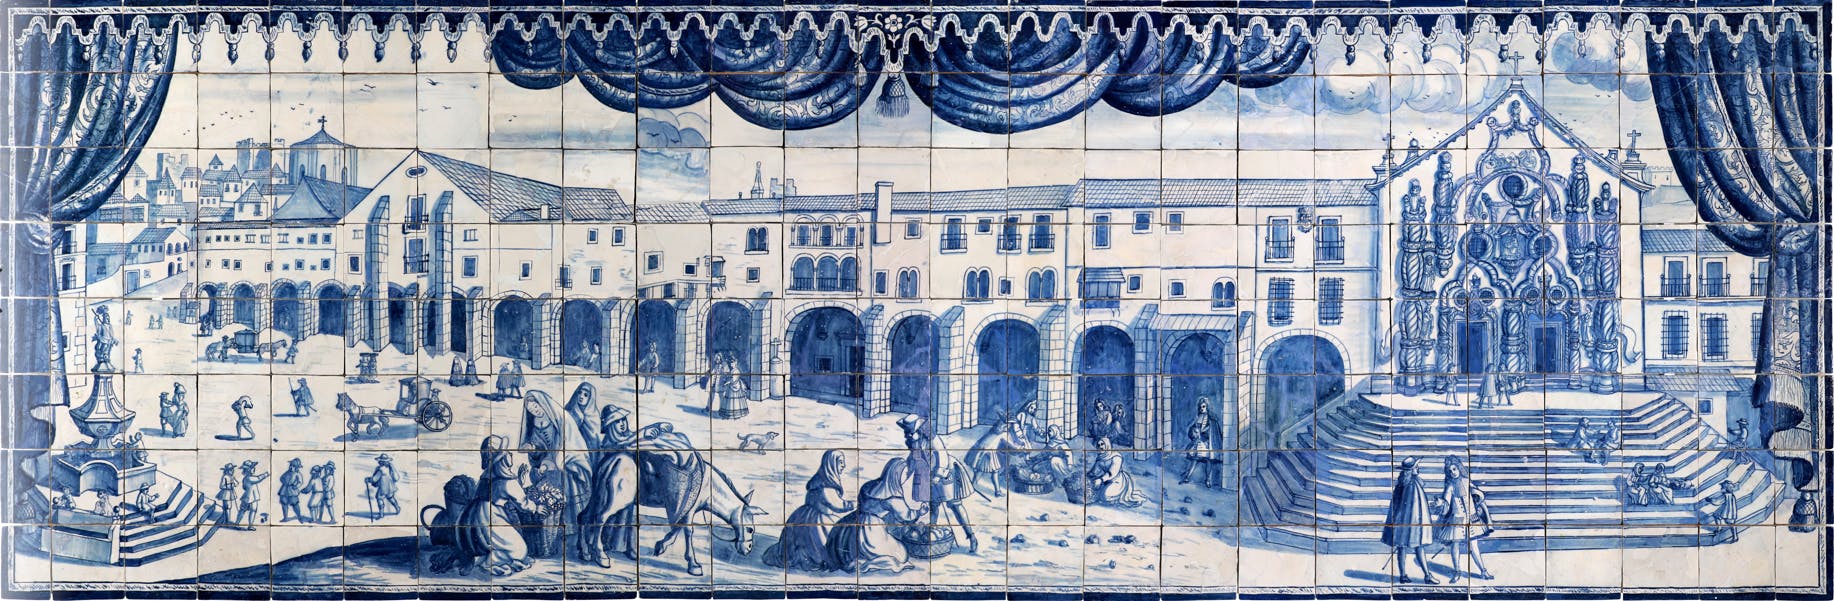 Panneau de azulejos (carreaux) figuratifs, datant du début du XVIIIe siècle, provenant d'un atelier de Lisbonne. Colecção do Museu de Lisboa /Câmara Municipal de Lisboa – EGEAC